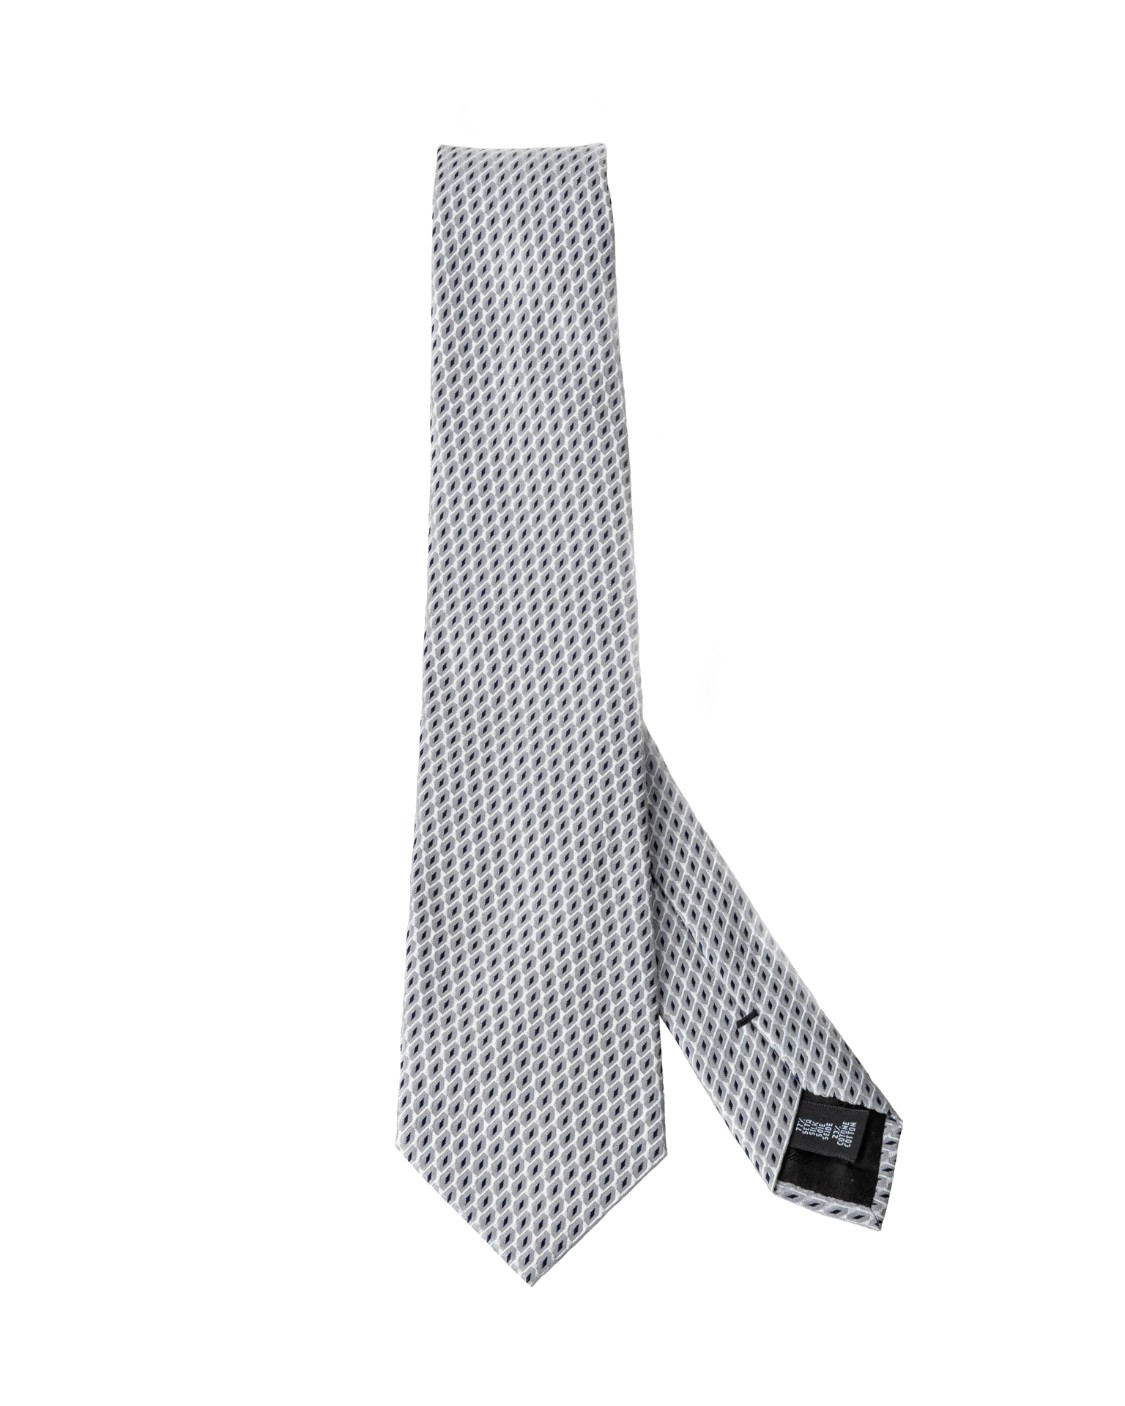 shop EMPORIO ARMANI  Cravatta: Emporio Armani cravatta in seta.
Modello con design a punta.
Larghezza pala 8cm.
Composizione: 77% seta 23% cotone.
Made in Italy.. 340075  9P310-17441 number 7620981